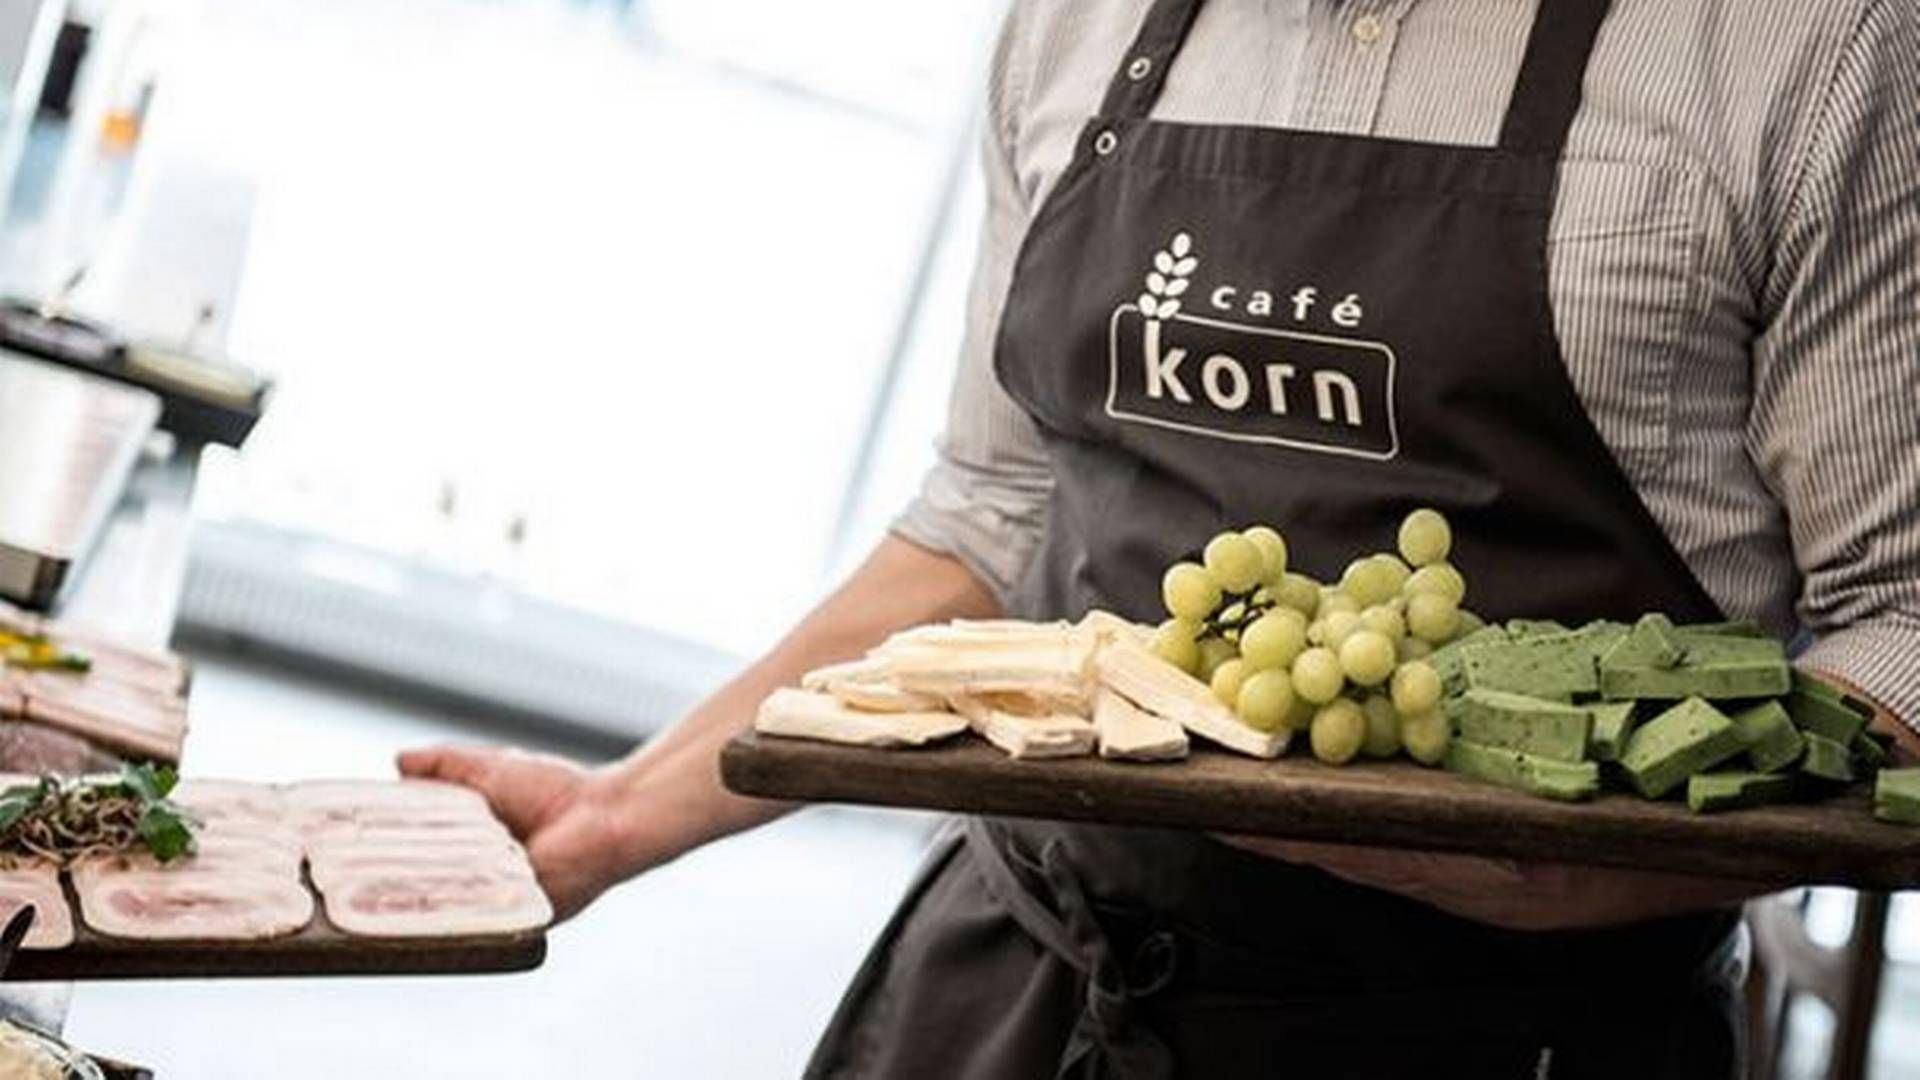 De seneste tre år har været udfordrende fra Café Korn, der dog er optimistisk og ser fremad. Nu ved kæden, hvor den skal lægge sine kræfter. | Foto: Café Korn / Pr